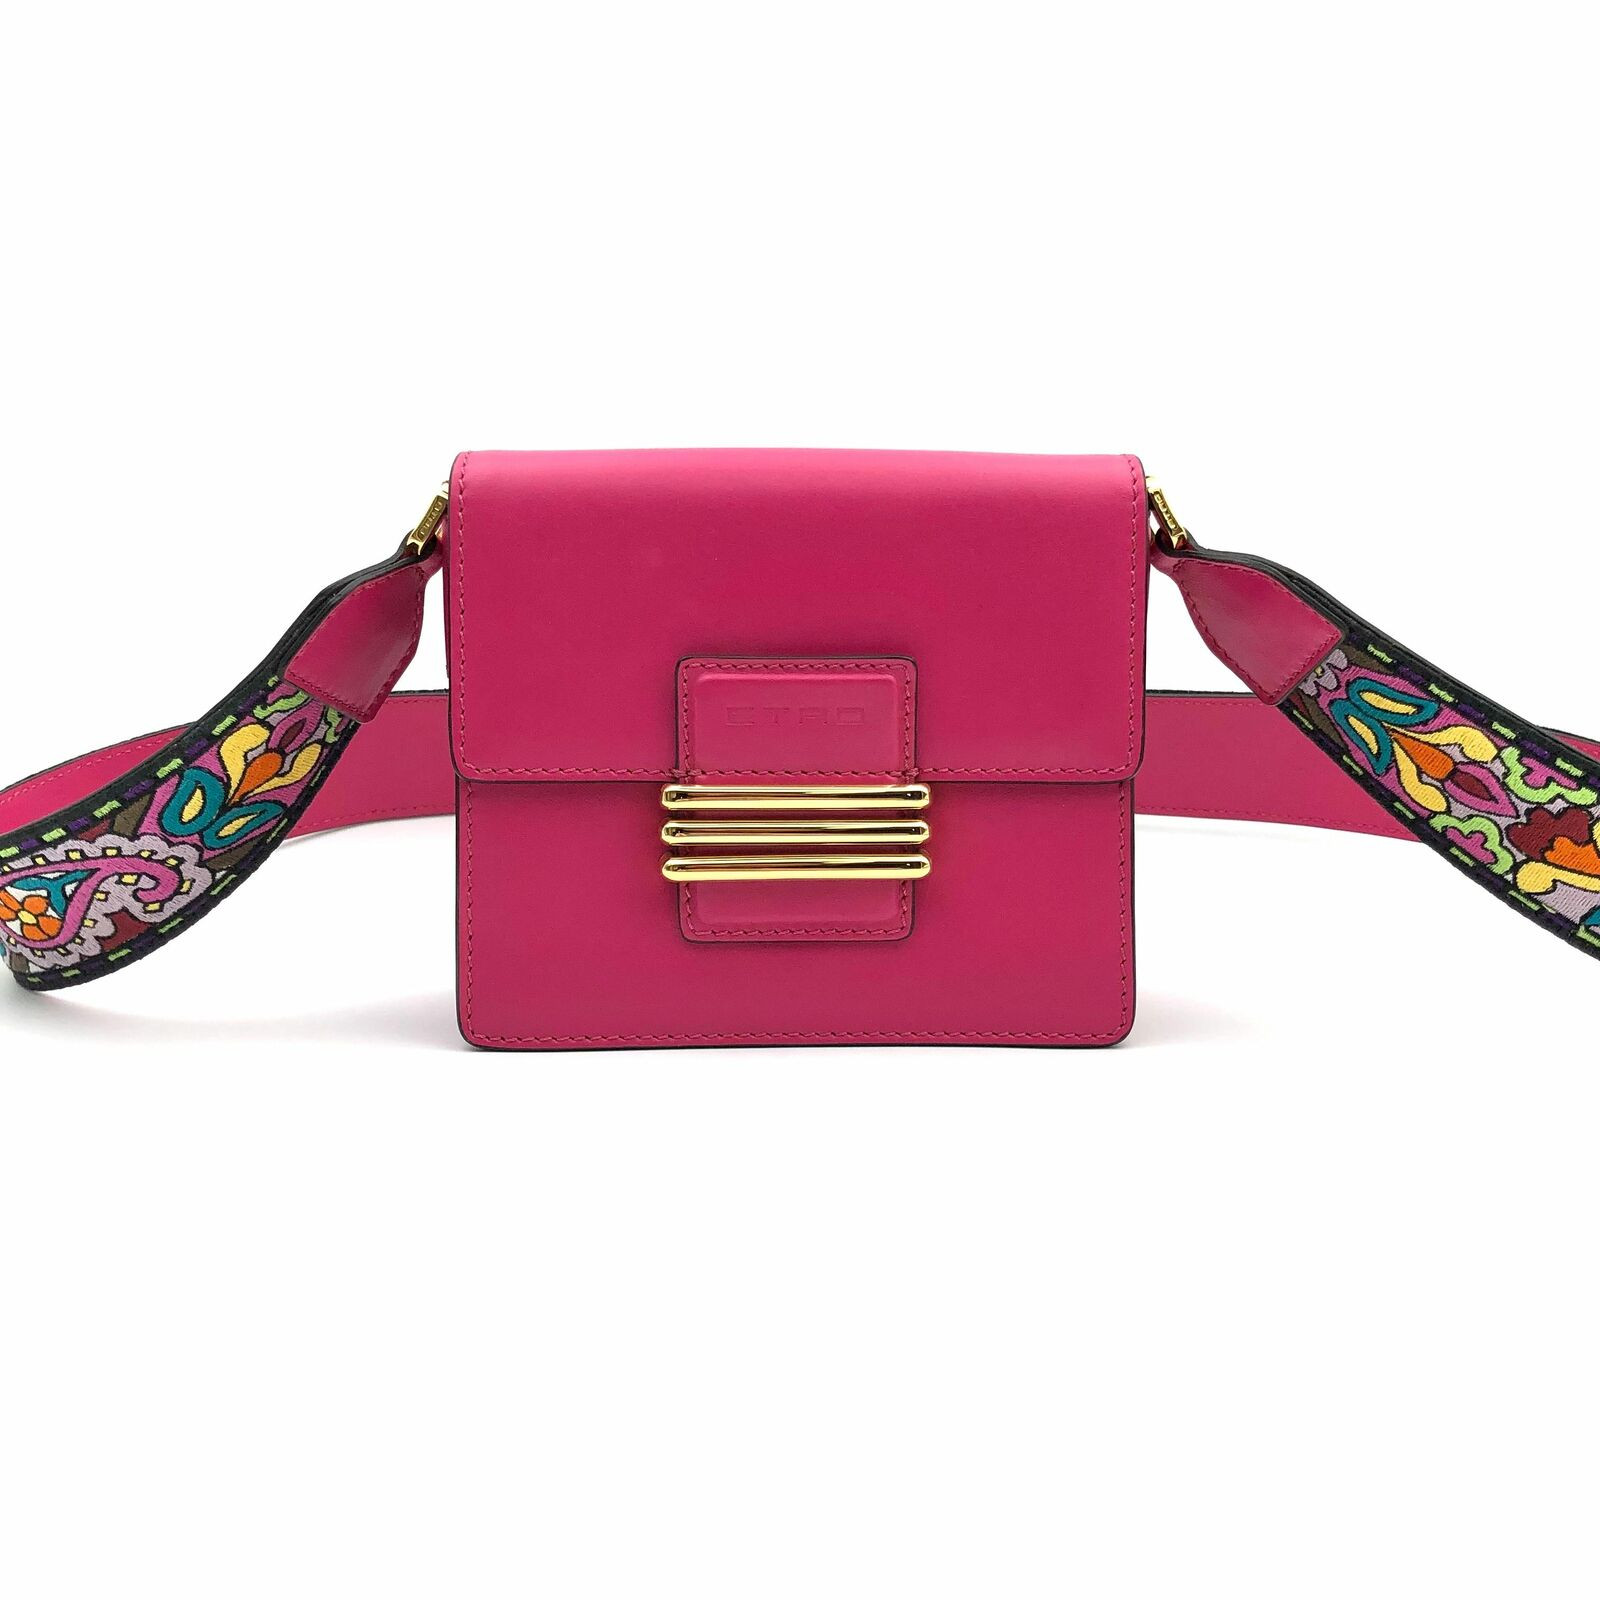 ETRO Women's Handtasche aus Leder in Rosa / Pink